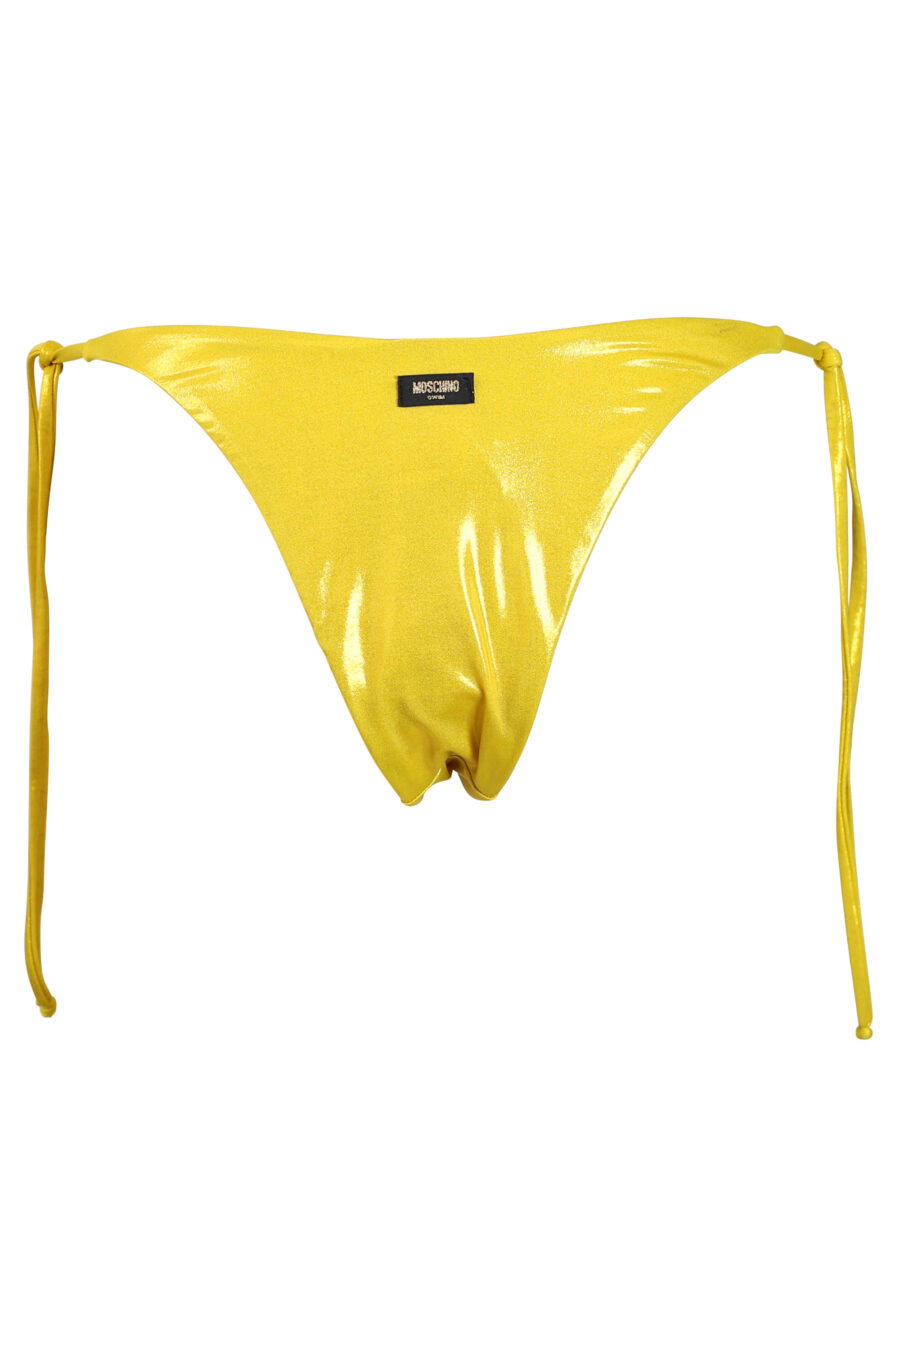 Braguita de bikini amarillo brillante con lazo lateral - 889316269680 2